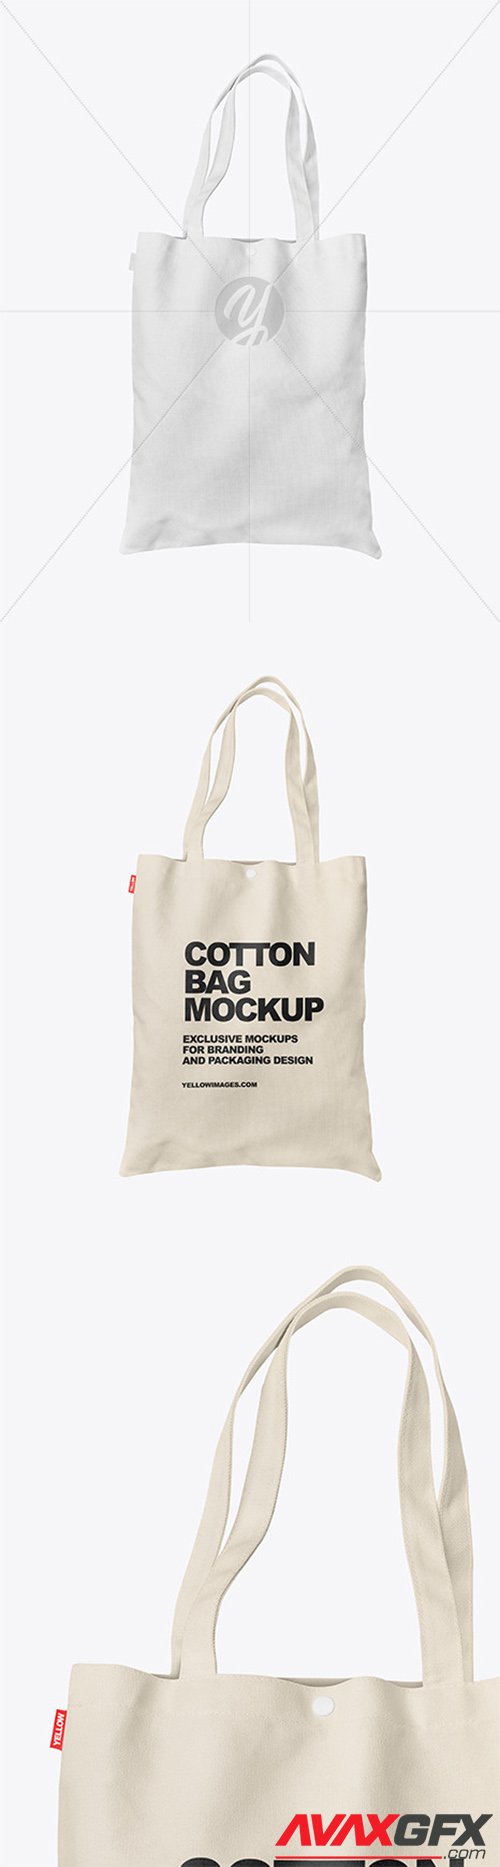 Cotton Bag Mockup 60425